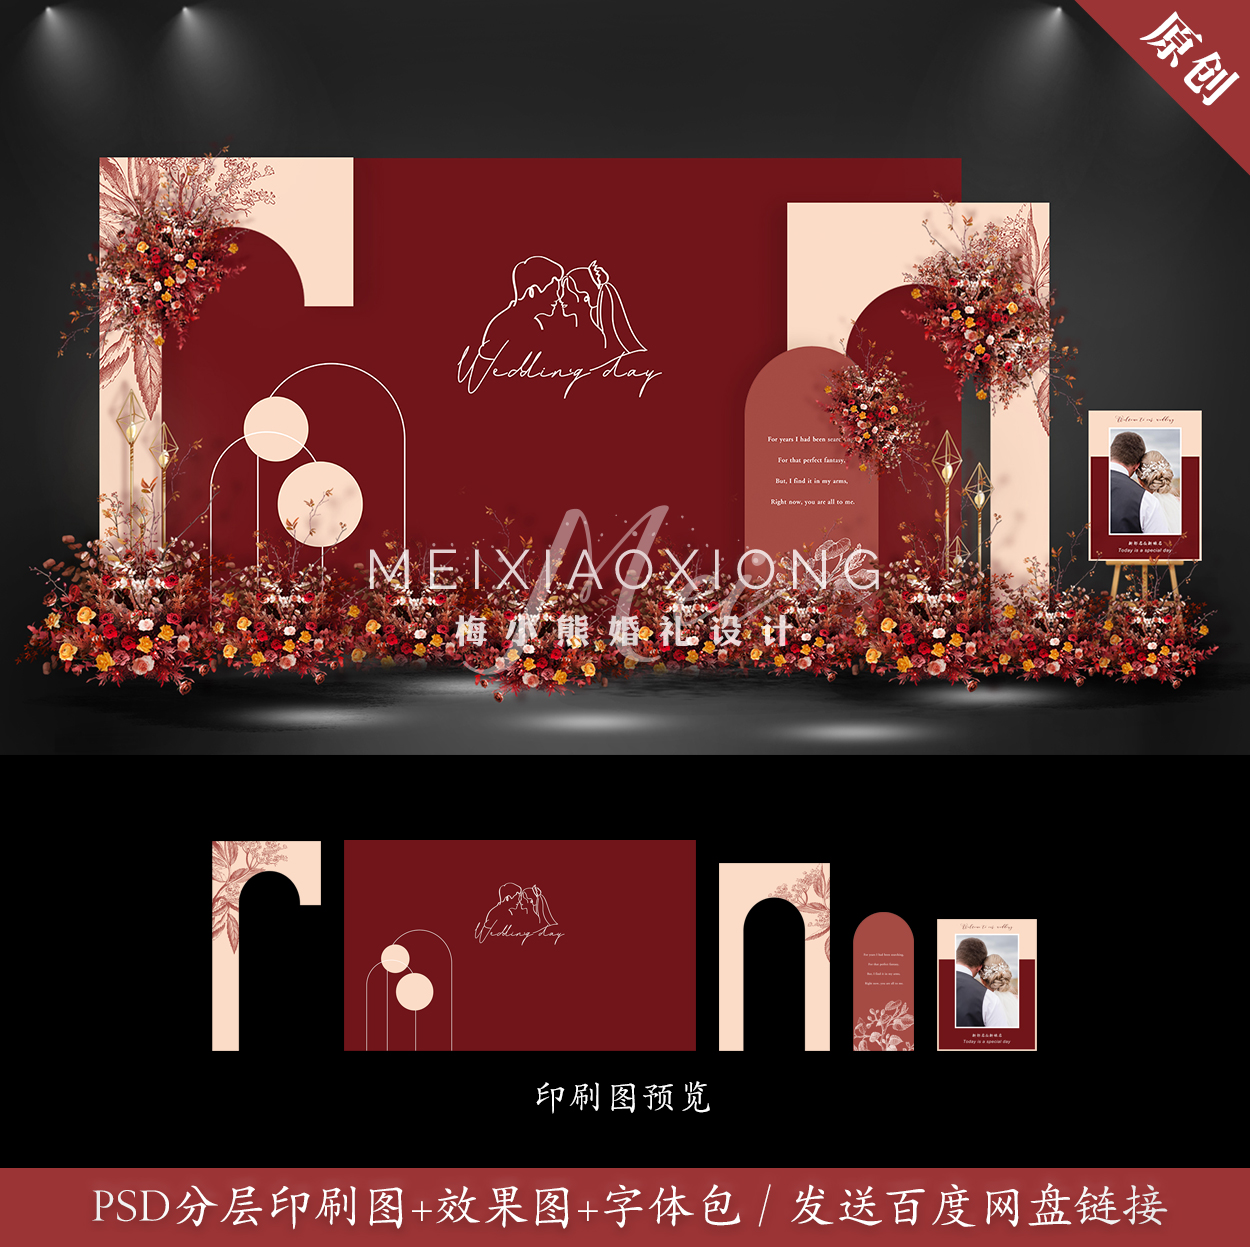 香槟红色婚礼背景墙设计图 婚庆迎宾留影区KT板布置效果图PSD模板